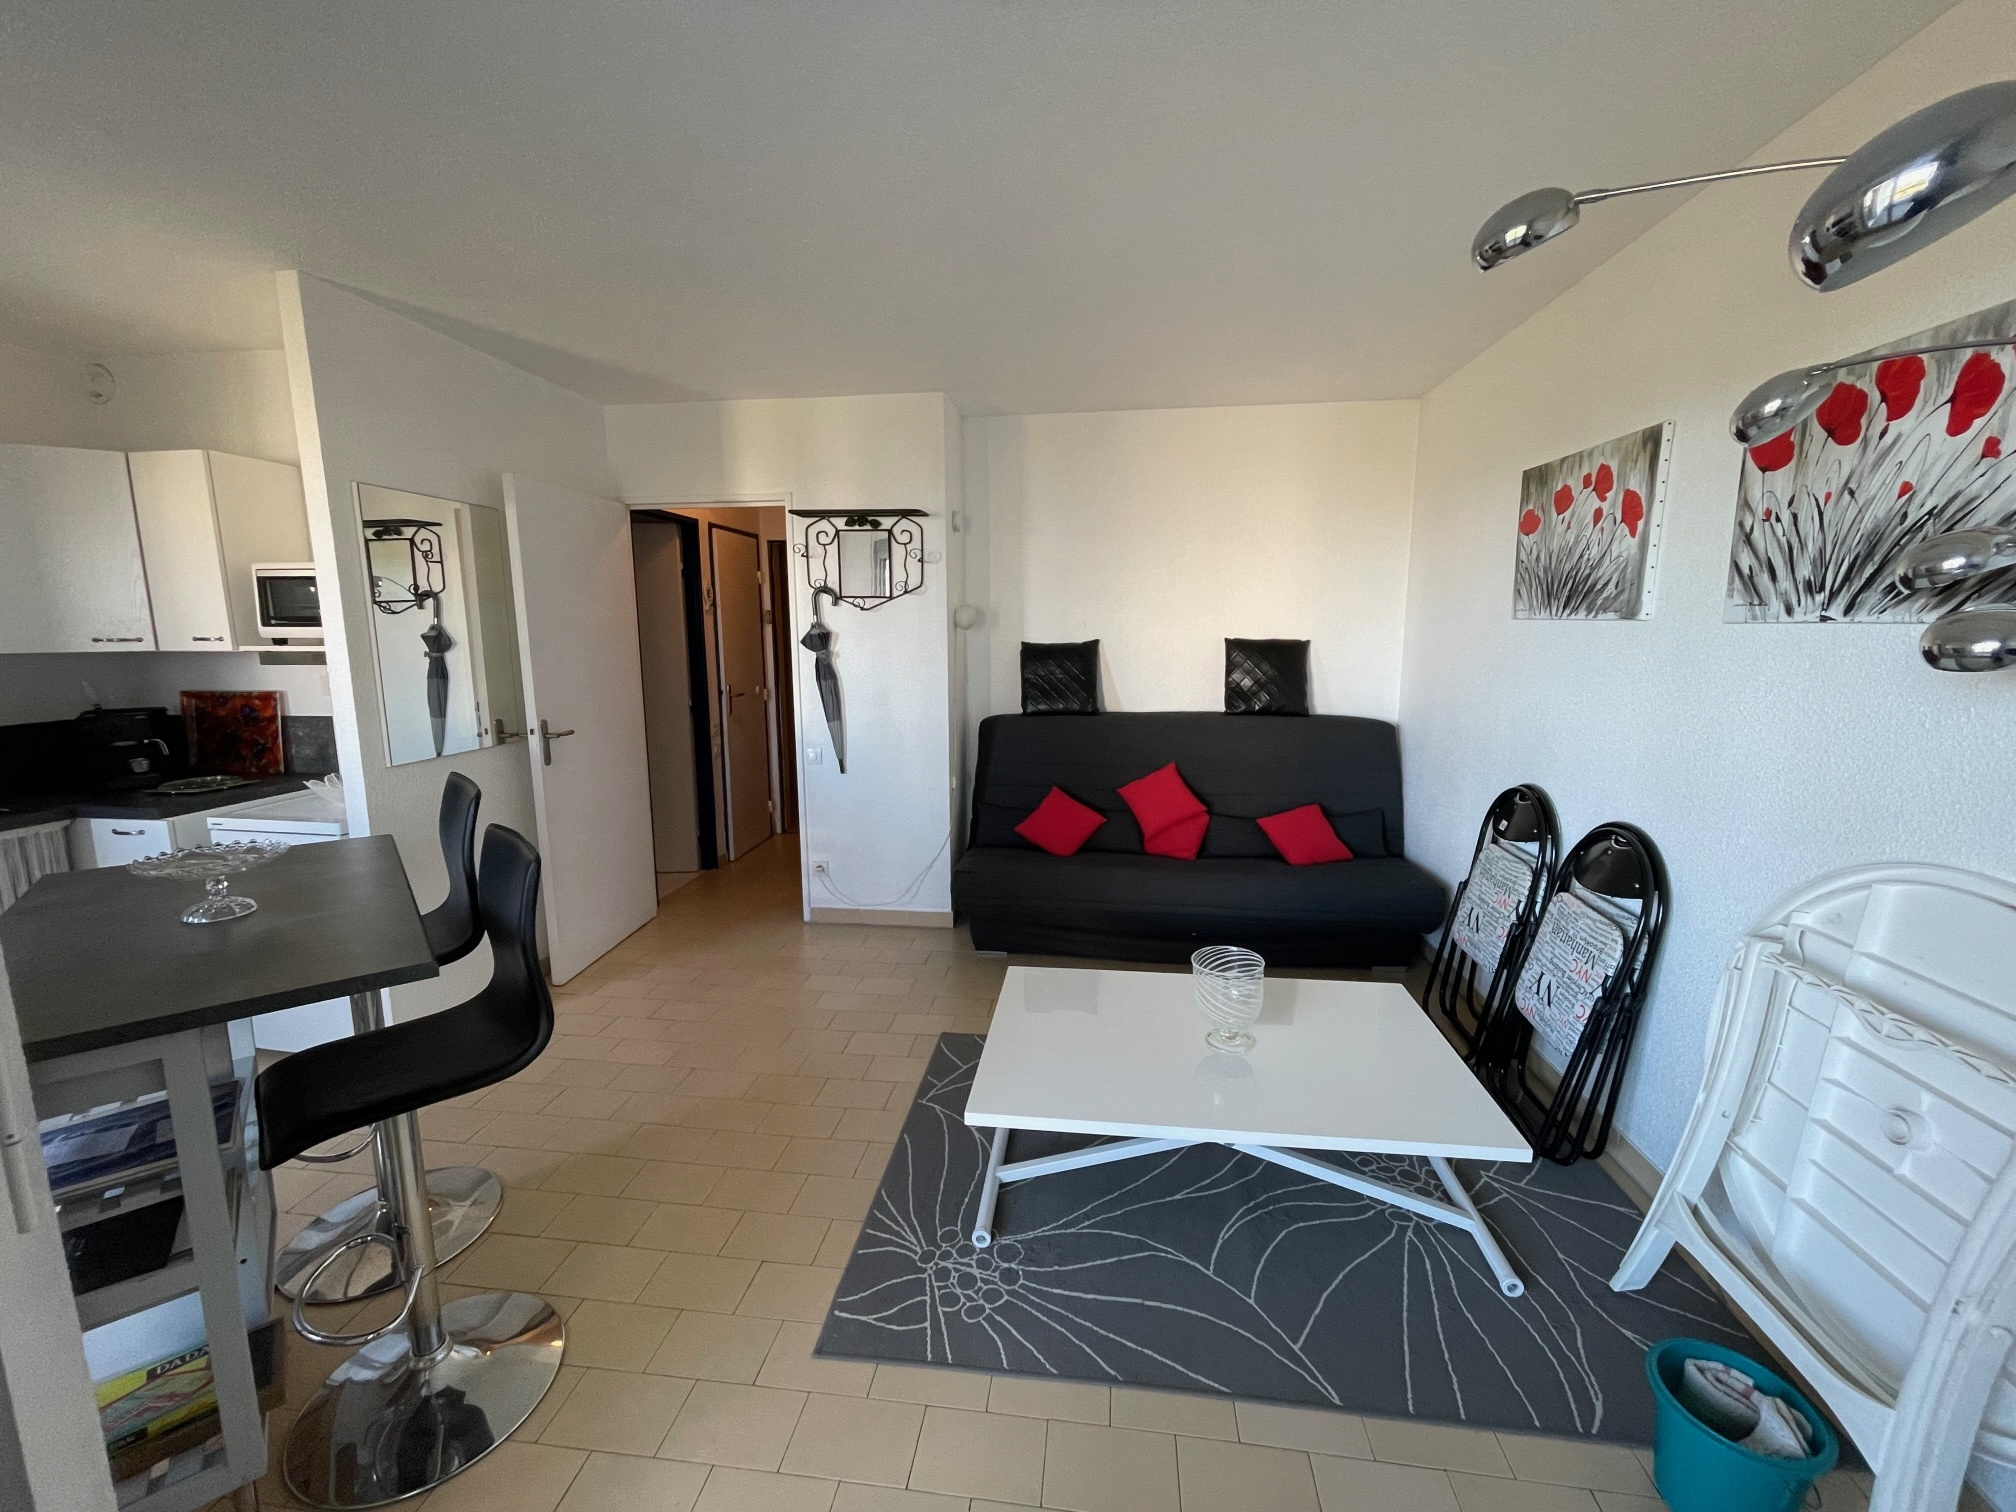 À vendre appartement de 35m2 à st cyprien plage (66750) - Photo 7'